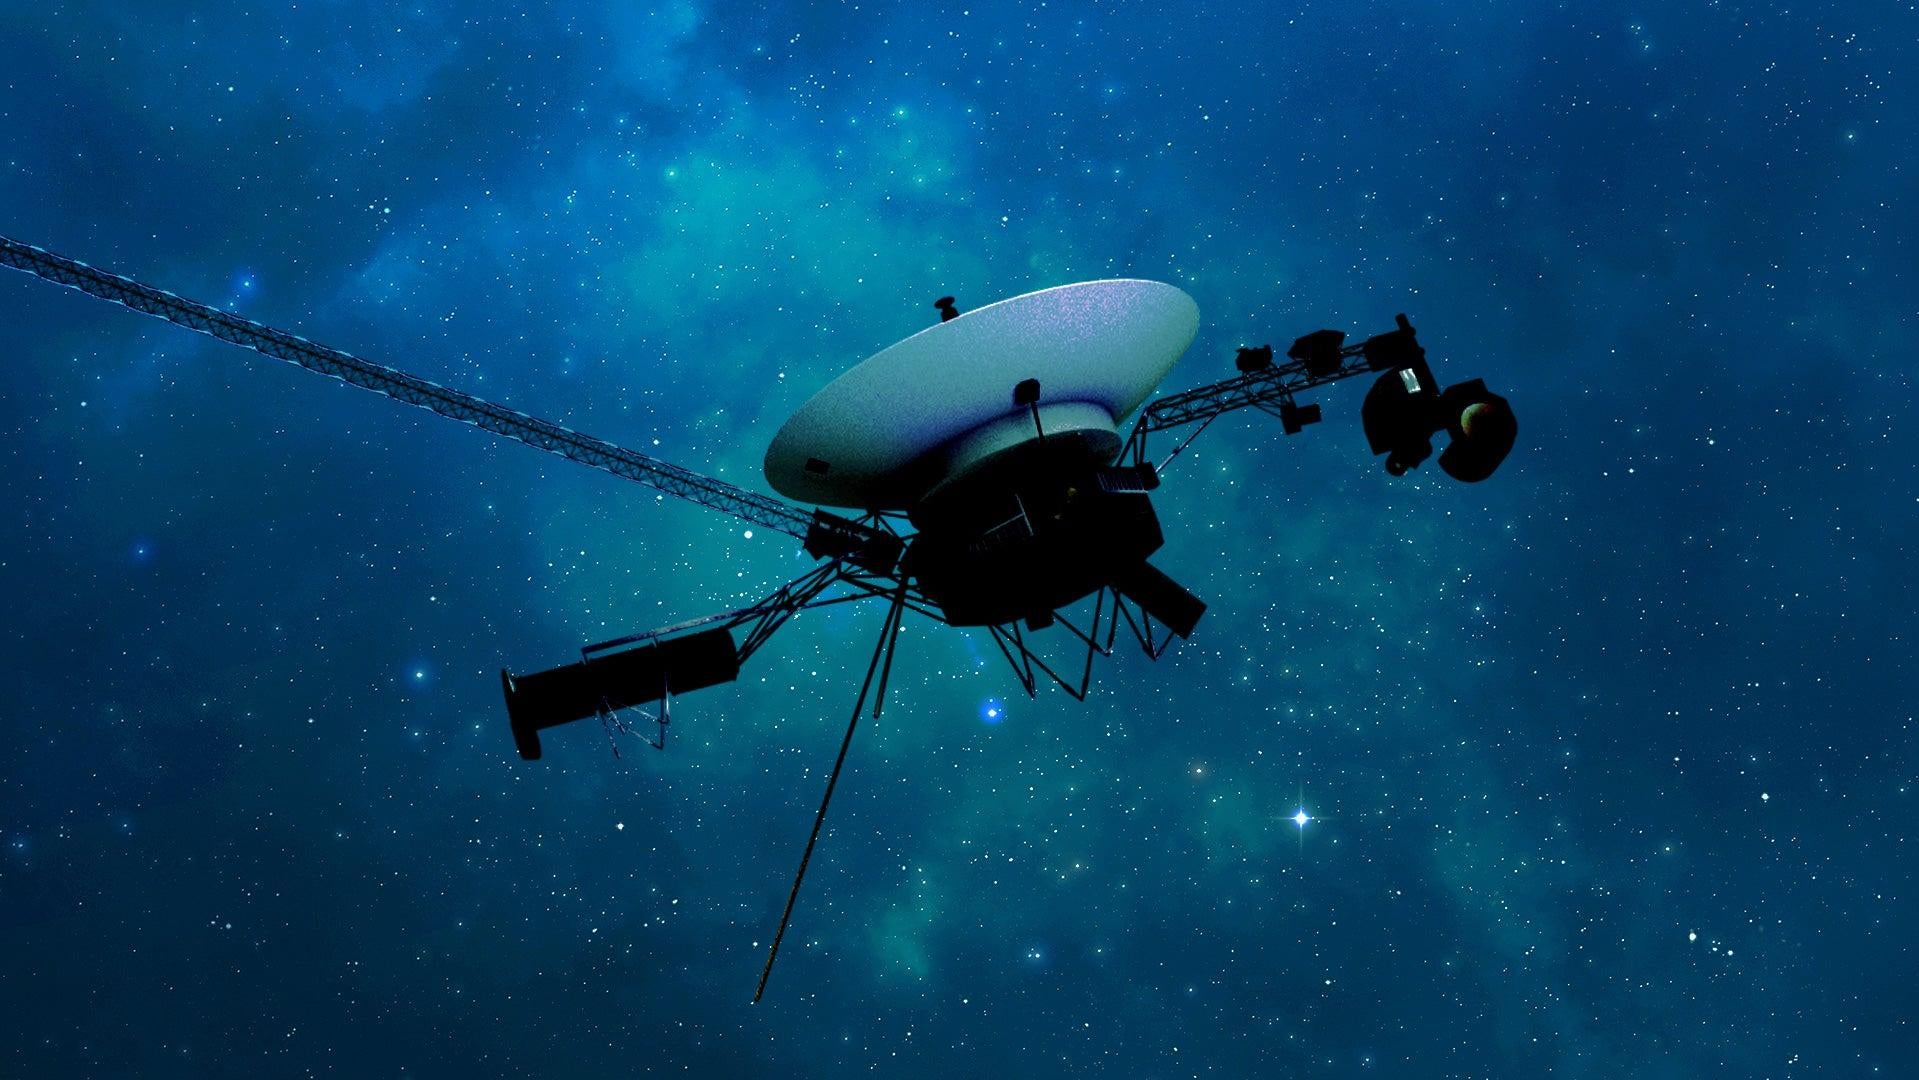 La navicella spaziale Voyager 1 della NASA ha finalmente senso dopo mesi di chiacchiere